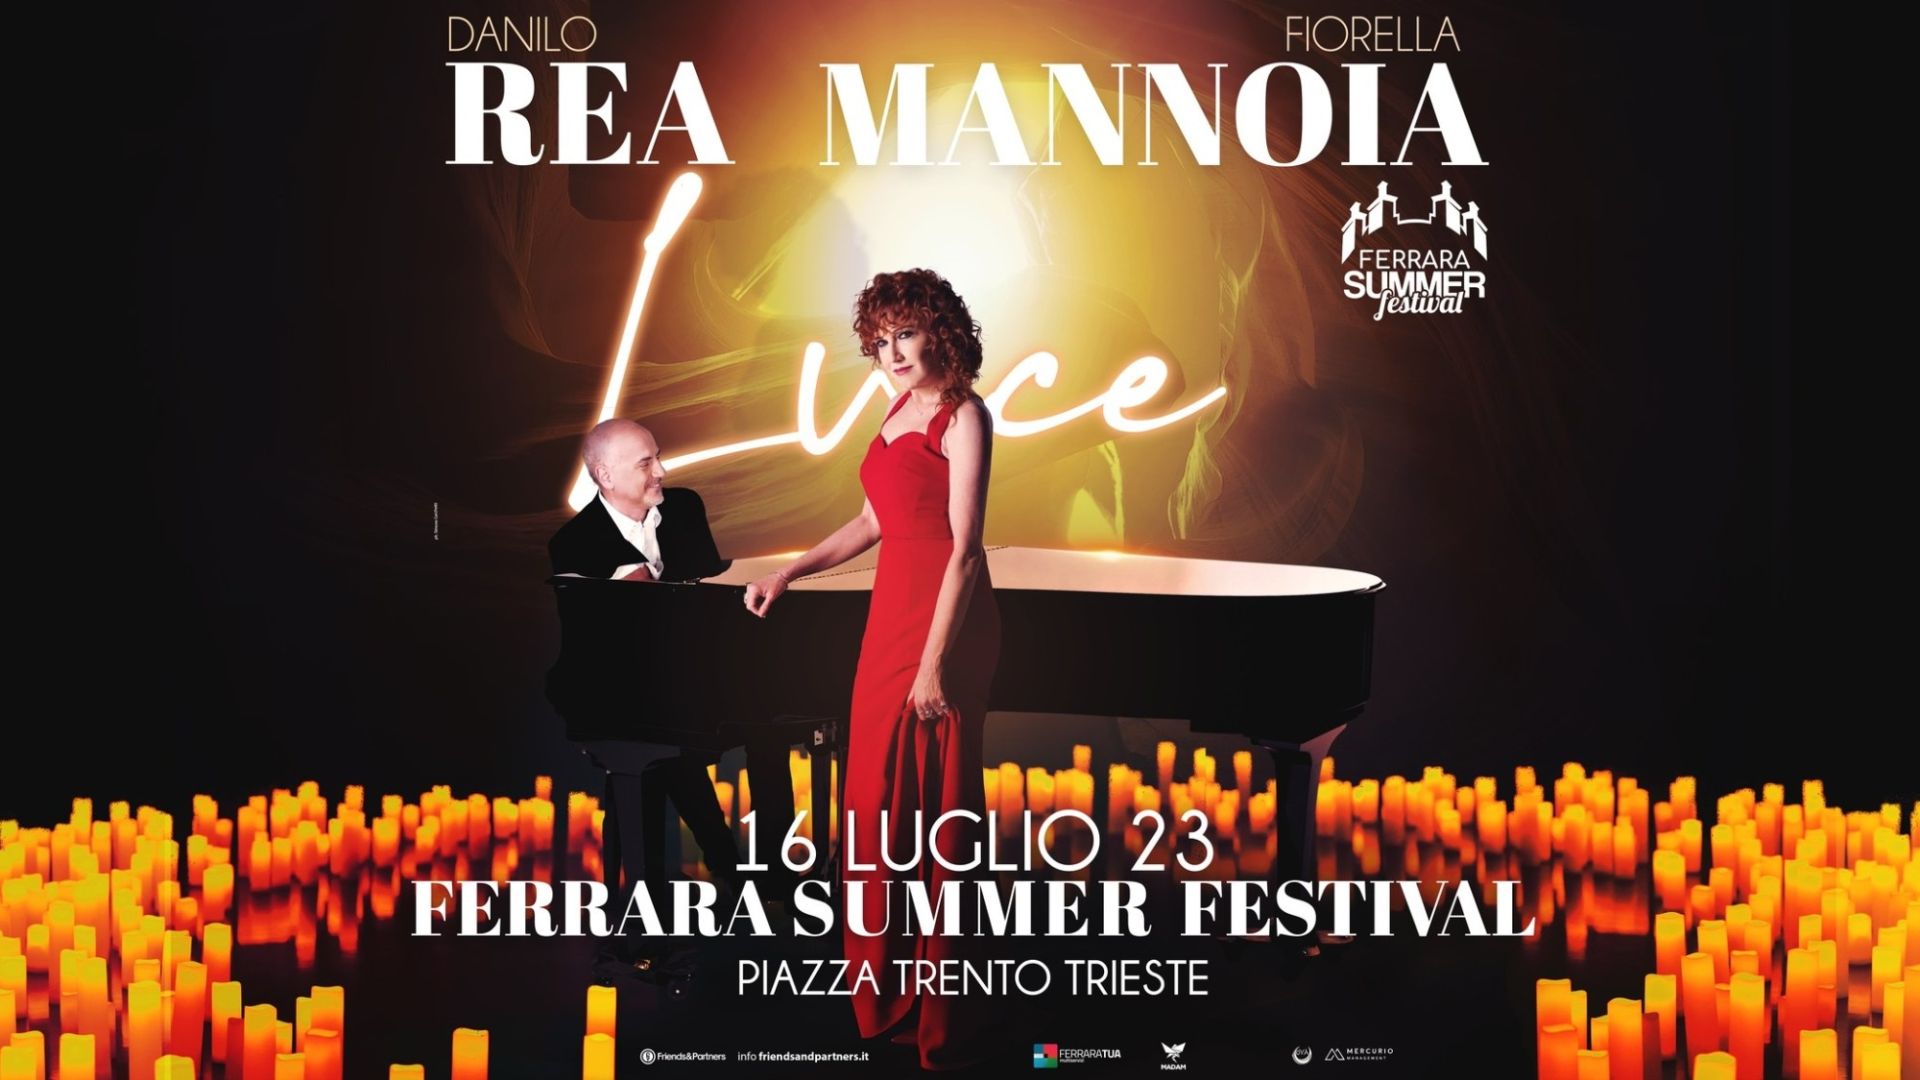 Fiorella Mannoia & Danilo Rea